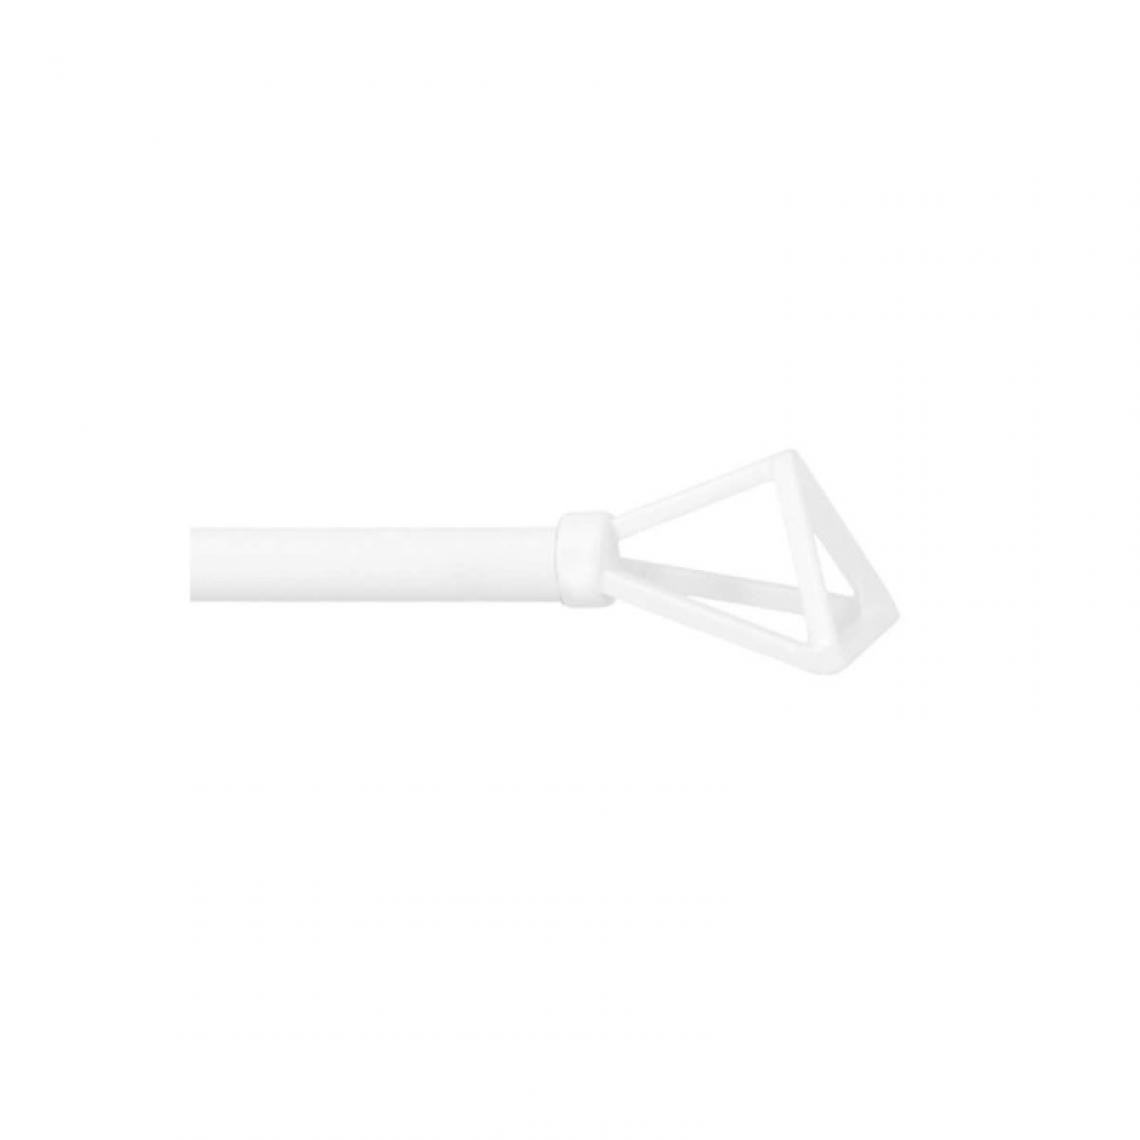 Mobois - Tringle Metal extensible Mobois Vitrage embout filaire blanc - 40 à 65 cm - 464003345 - Cheville